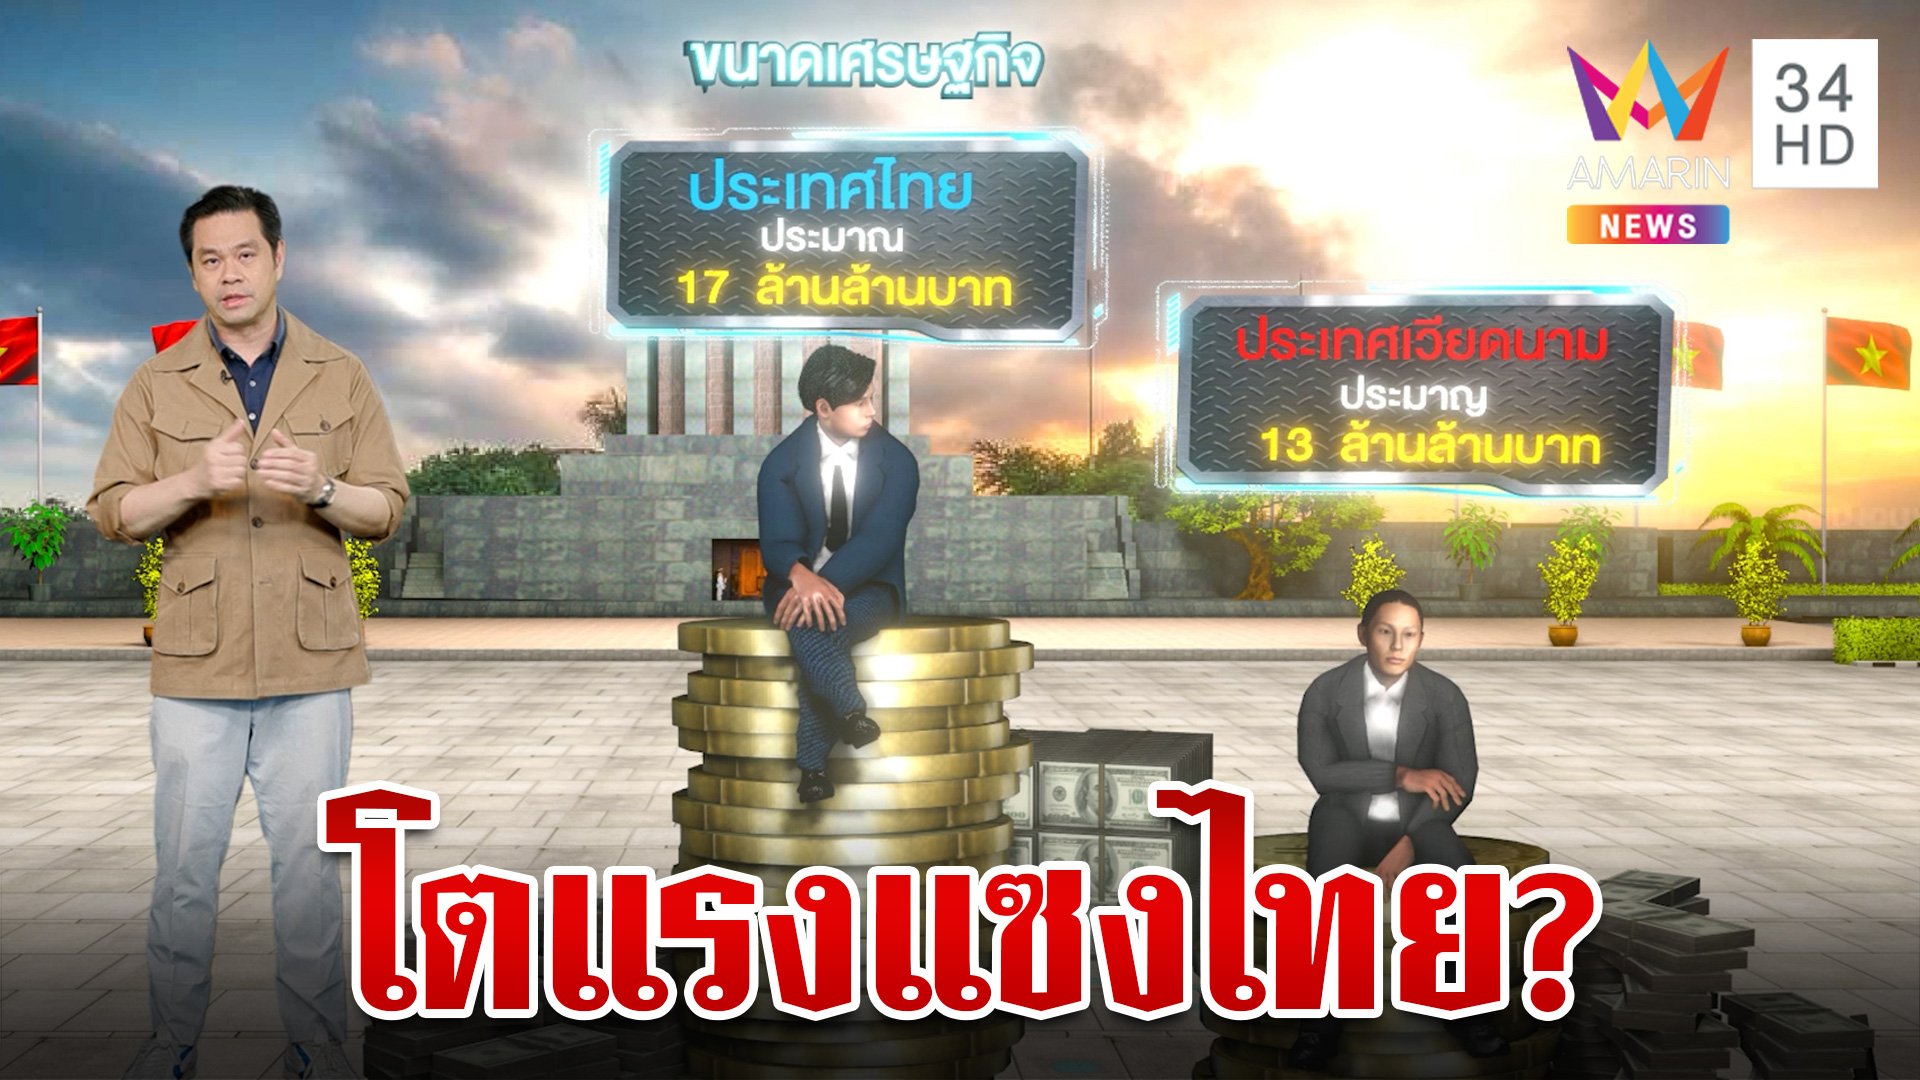 จริงหรือไม่เศรษฐกิจเวียดนามจะเจริญก้าวหน้ากว่าประเทศไทย | ทุบโต๊ะข่าว | 10 ก.ค. 66 | AMARIN TVHD34